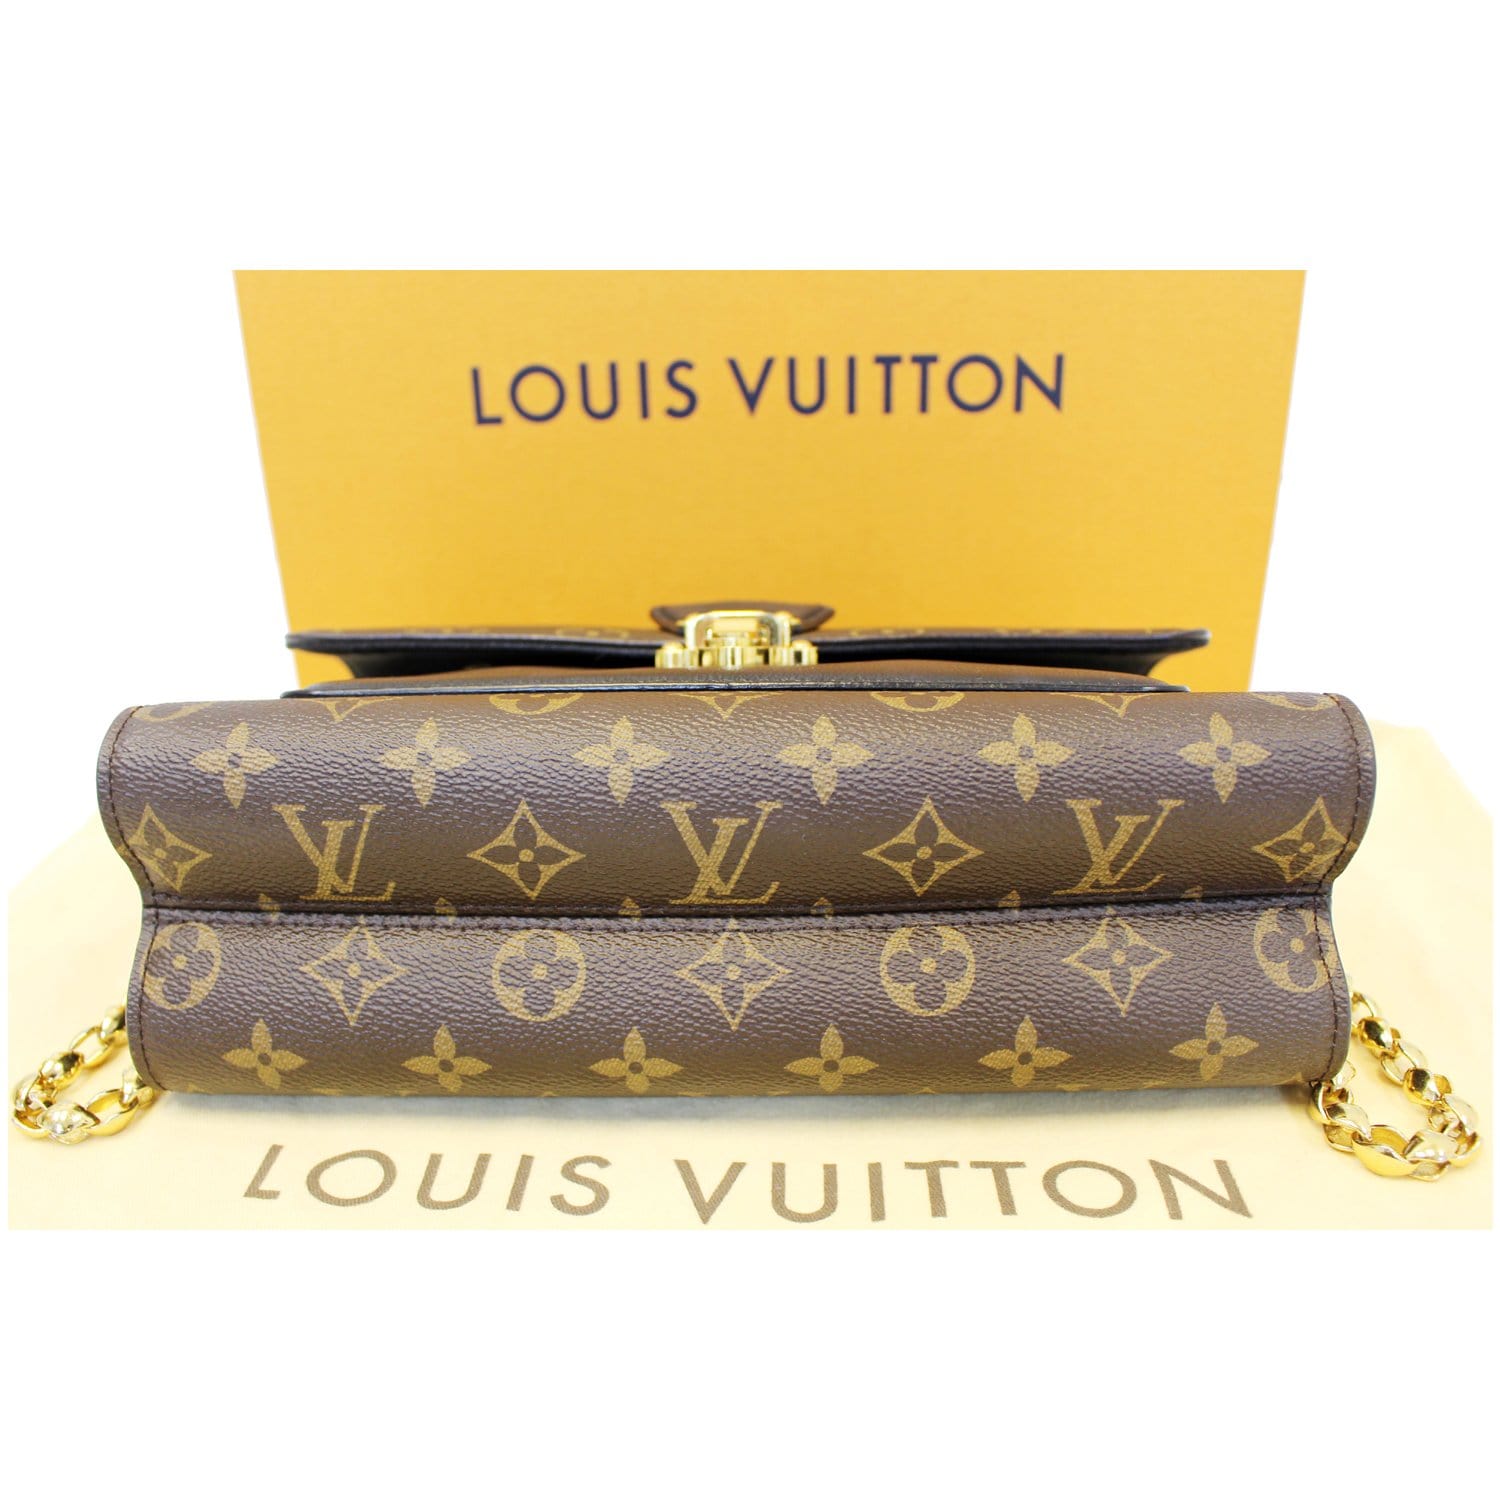 Louis Vuitton dévoile sa deuxième adresse iconique sur les Champs-Élysées à  Paris